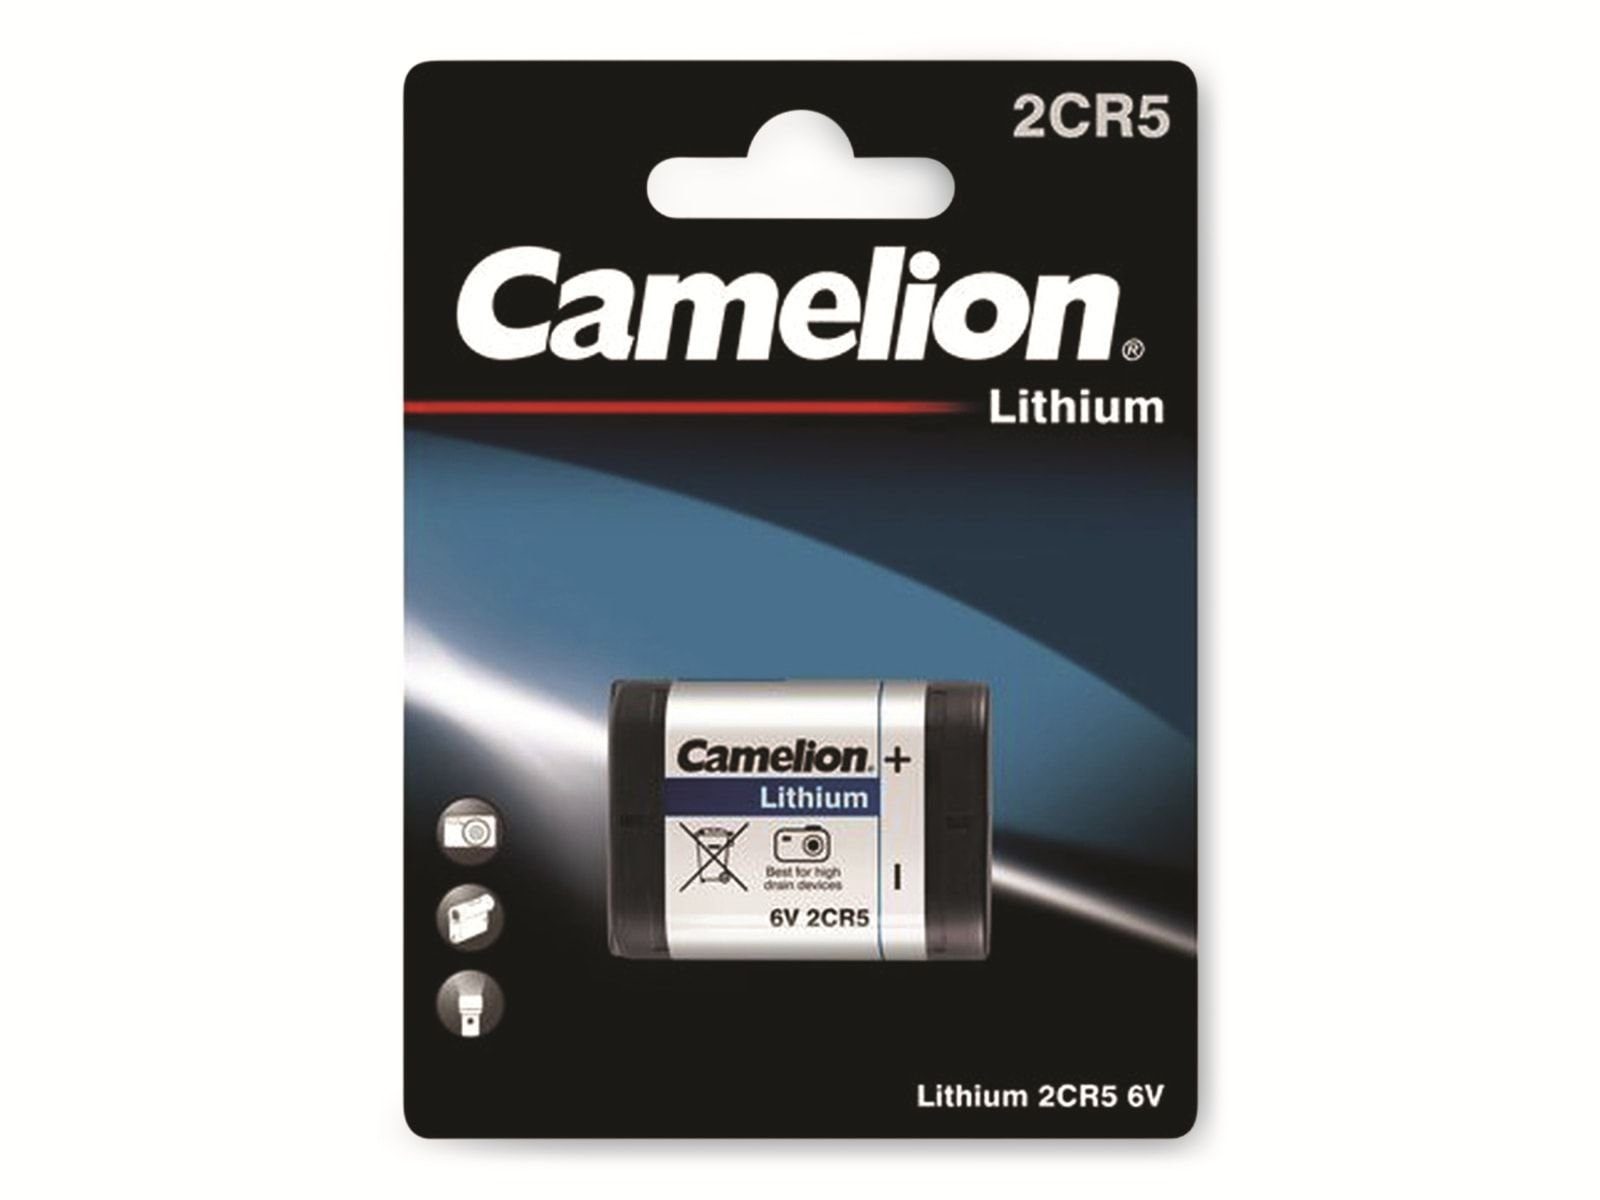 Camelion CAMELION Lithium-Batterie CR Batterie 2CR5 1 Stück